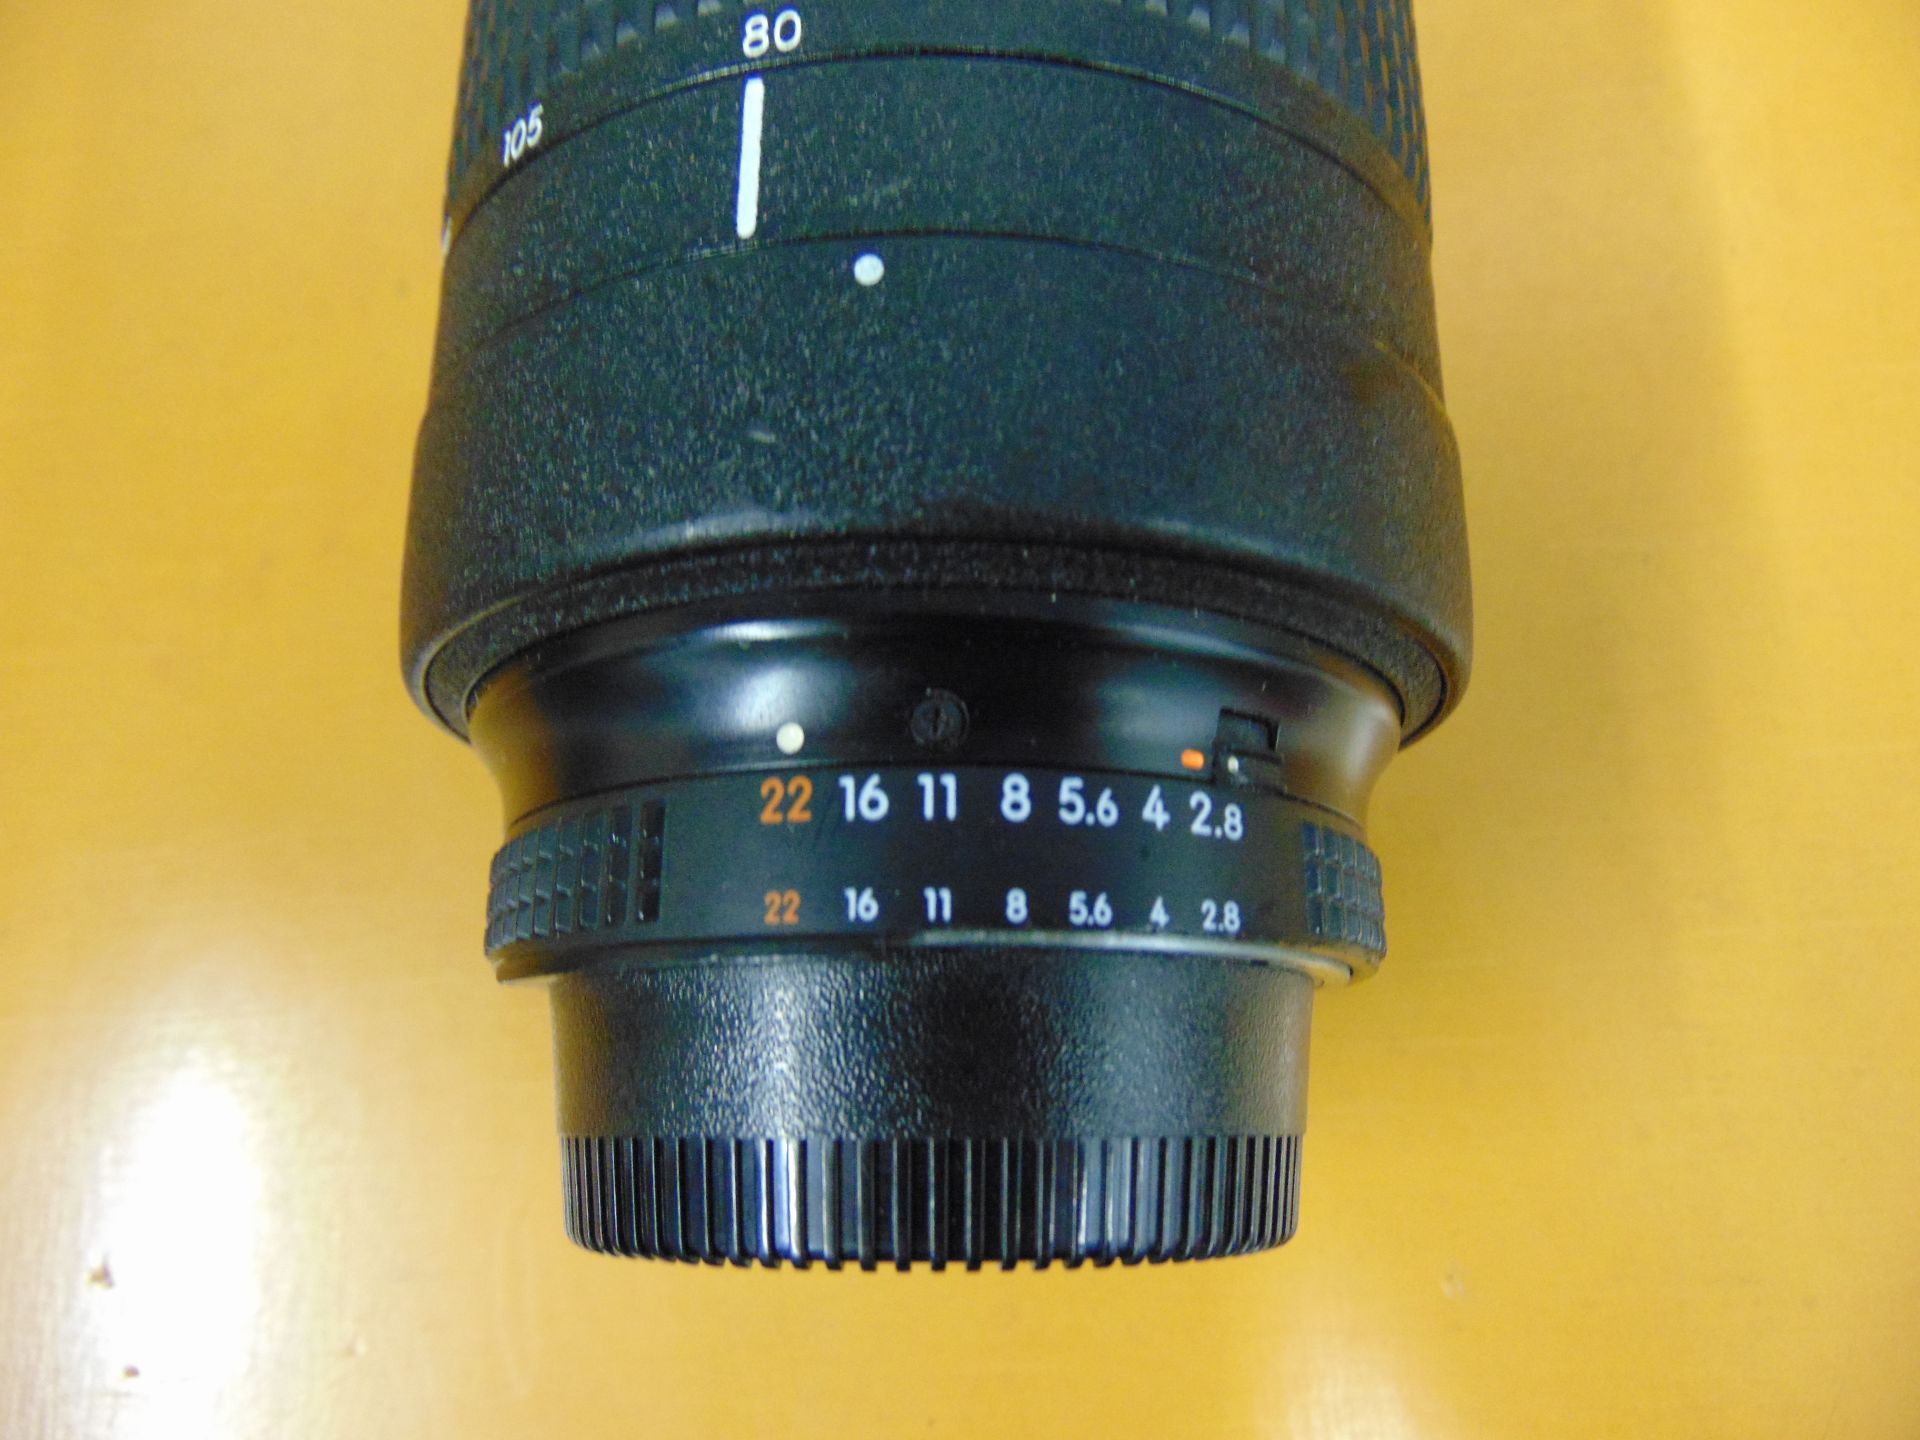 Nikon ED AF Nikkor 80-200mm 1:2.8 D Lense with Leather Carry Case - Image 4 of 8